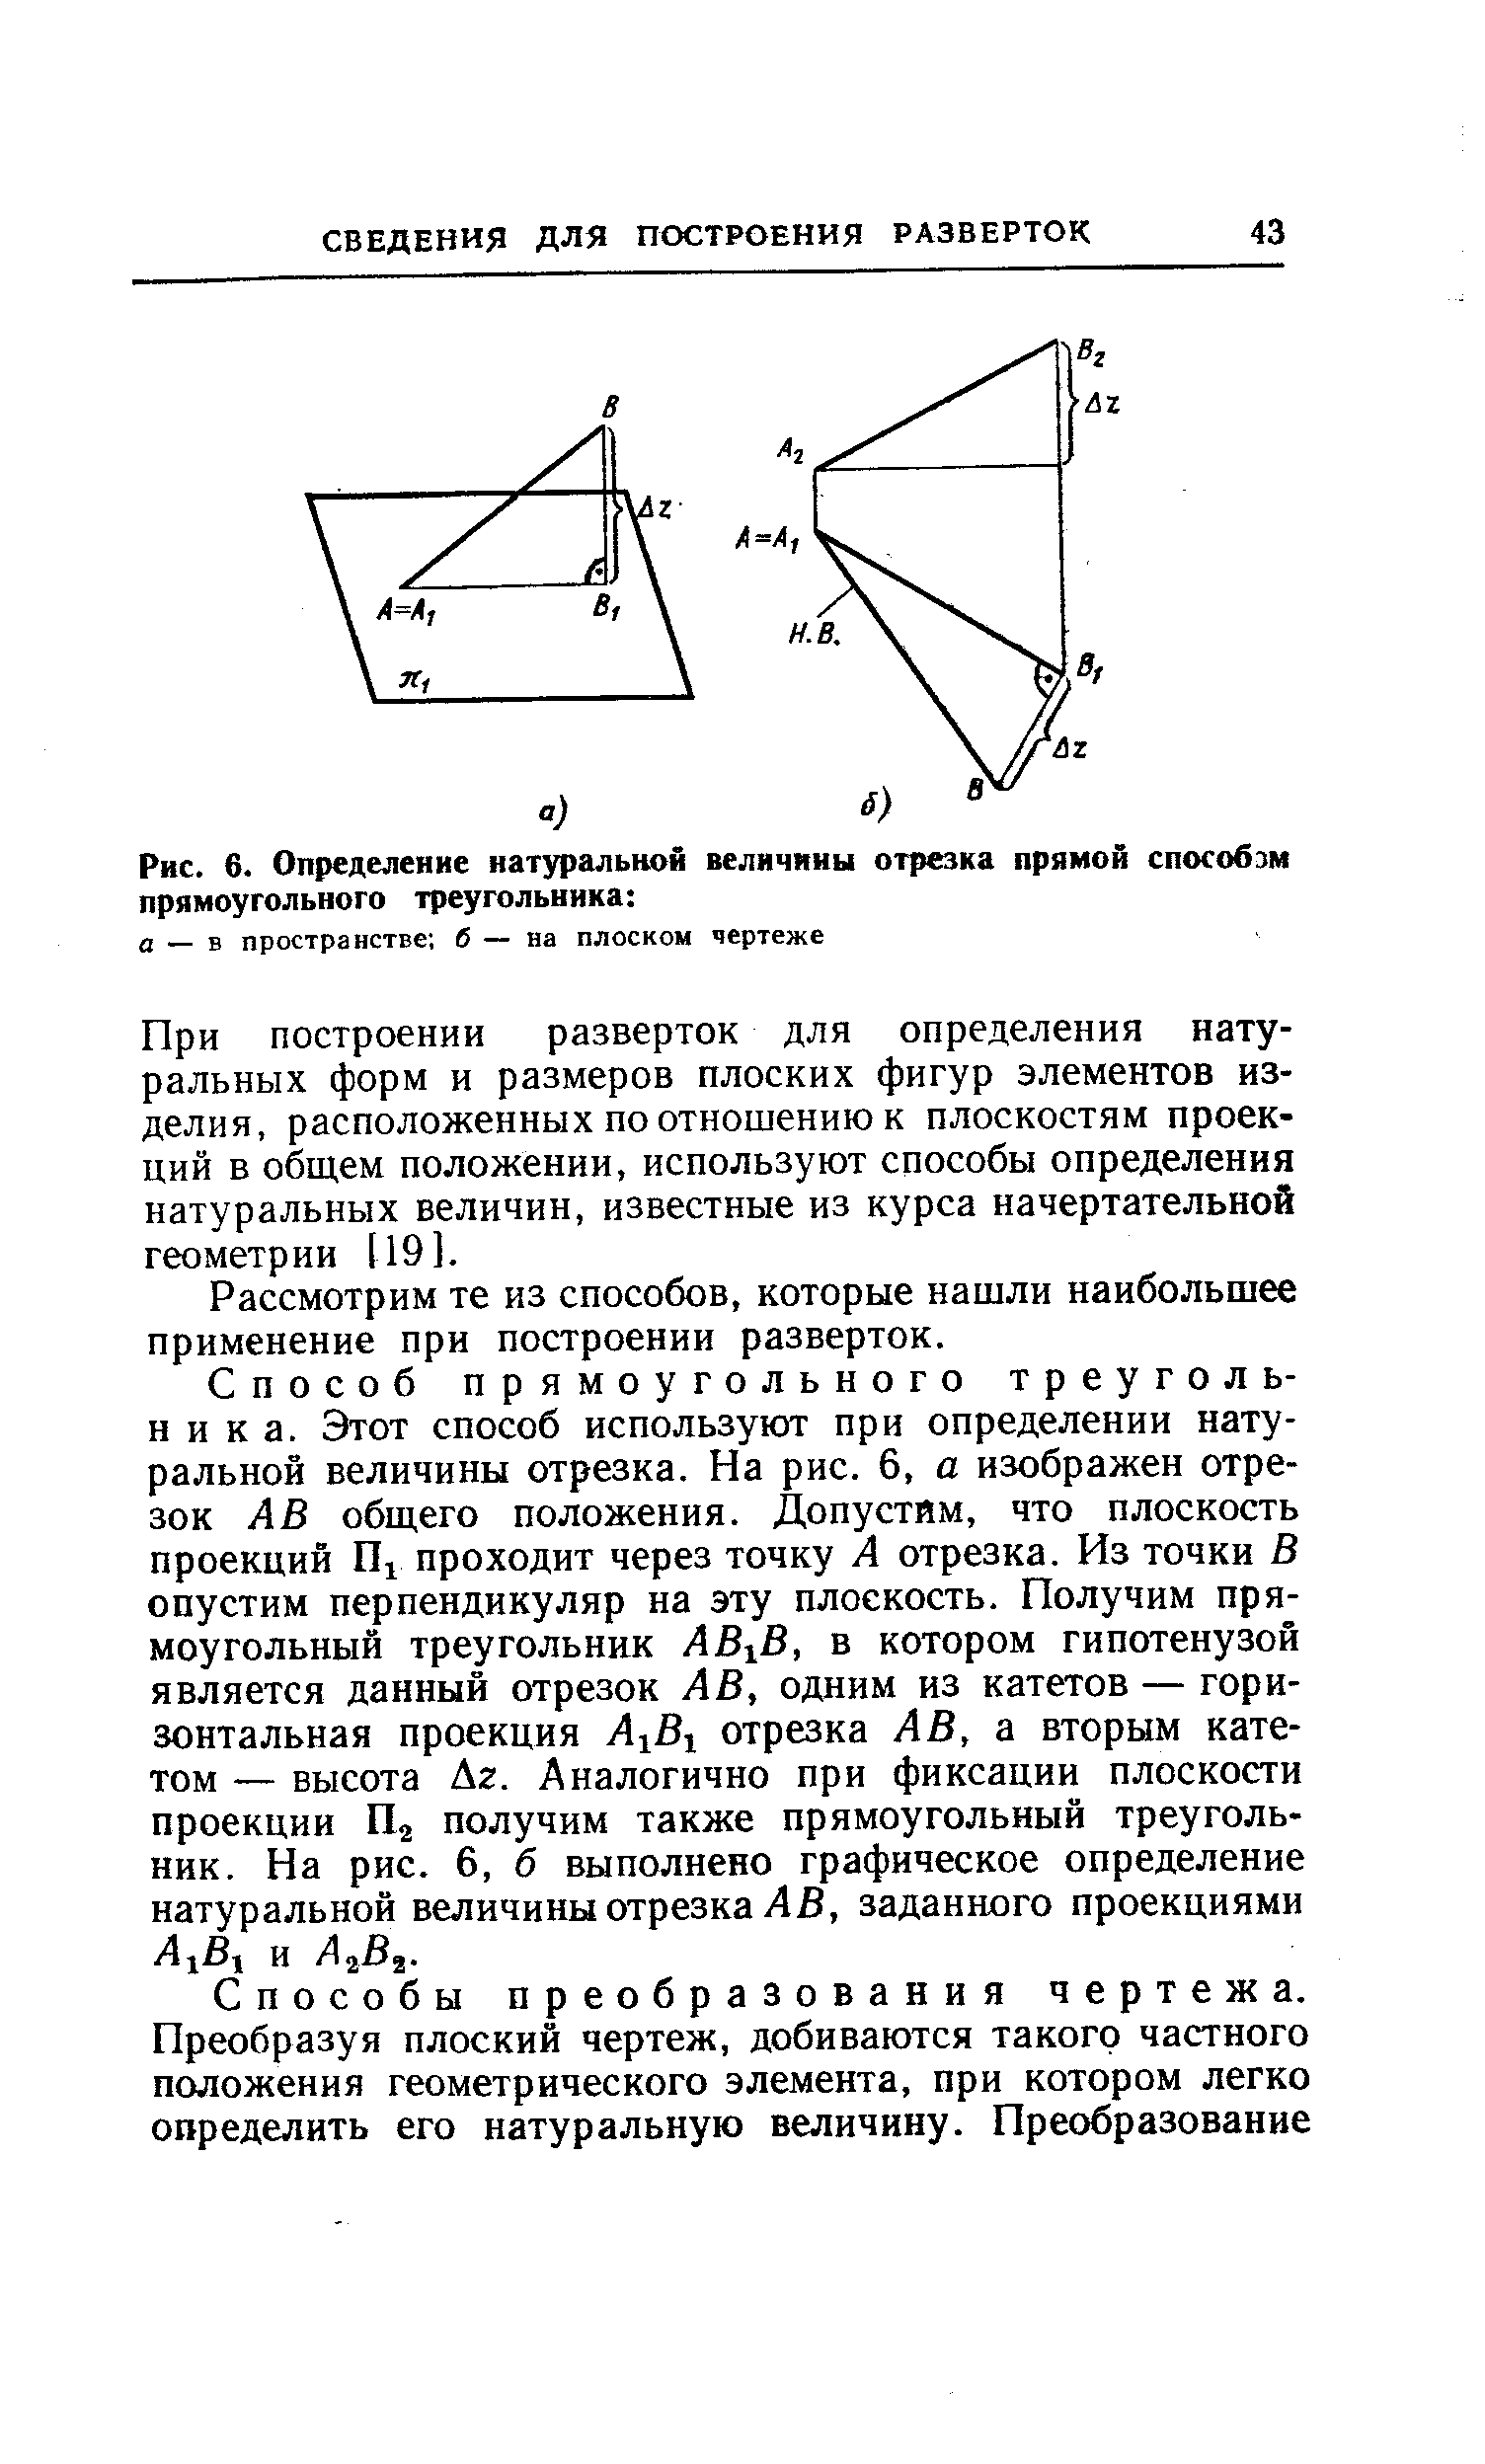 Рис. 6. Определение натуральной величины отрезка прямой способзм прямоугольного треугольника 
